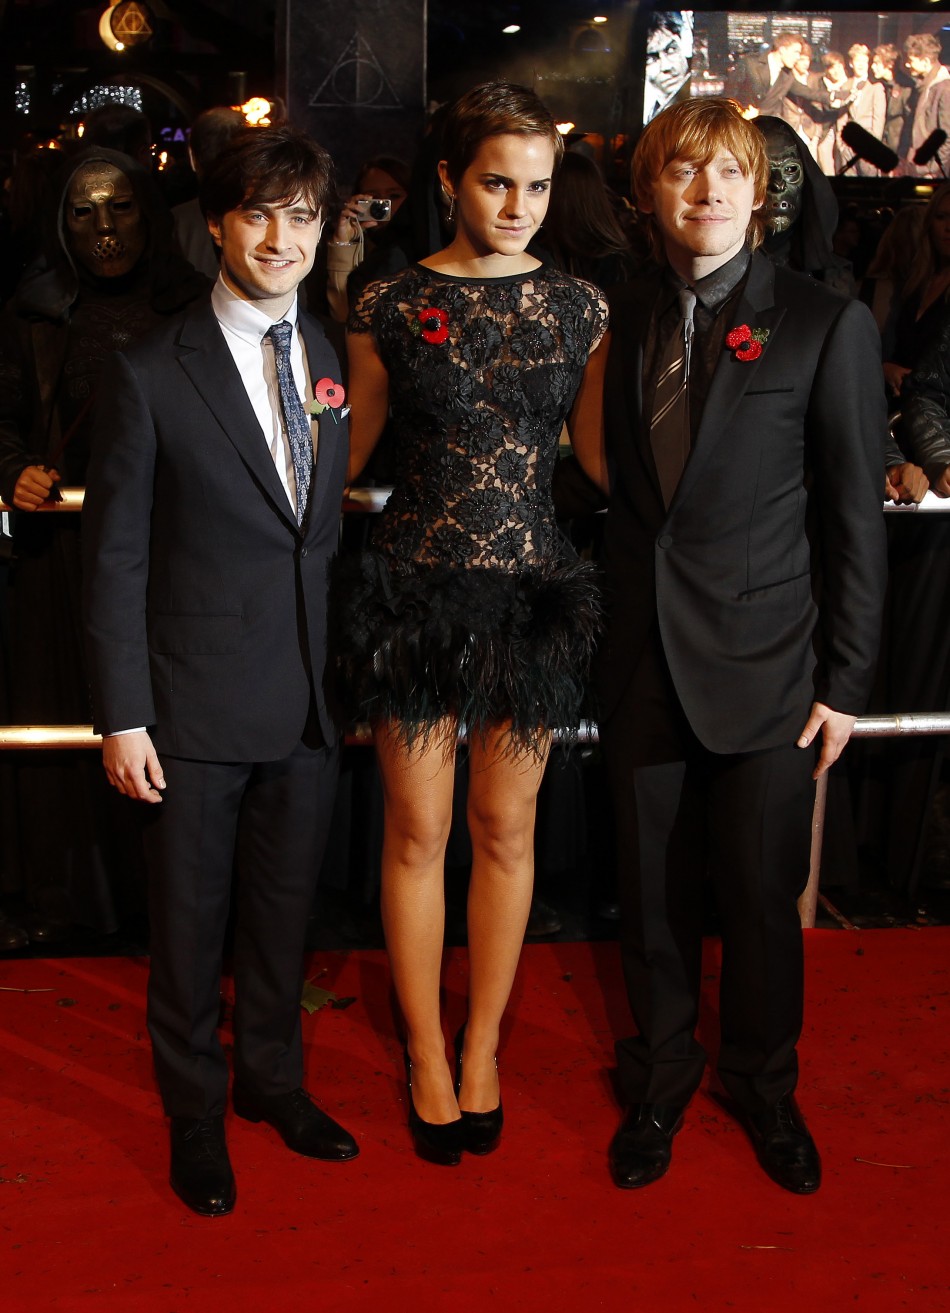 Daniel Radcliffe, Emma Watson and Rupert Grint